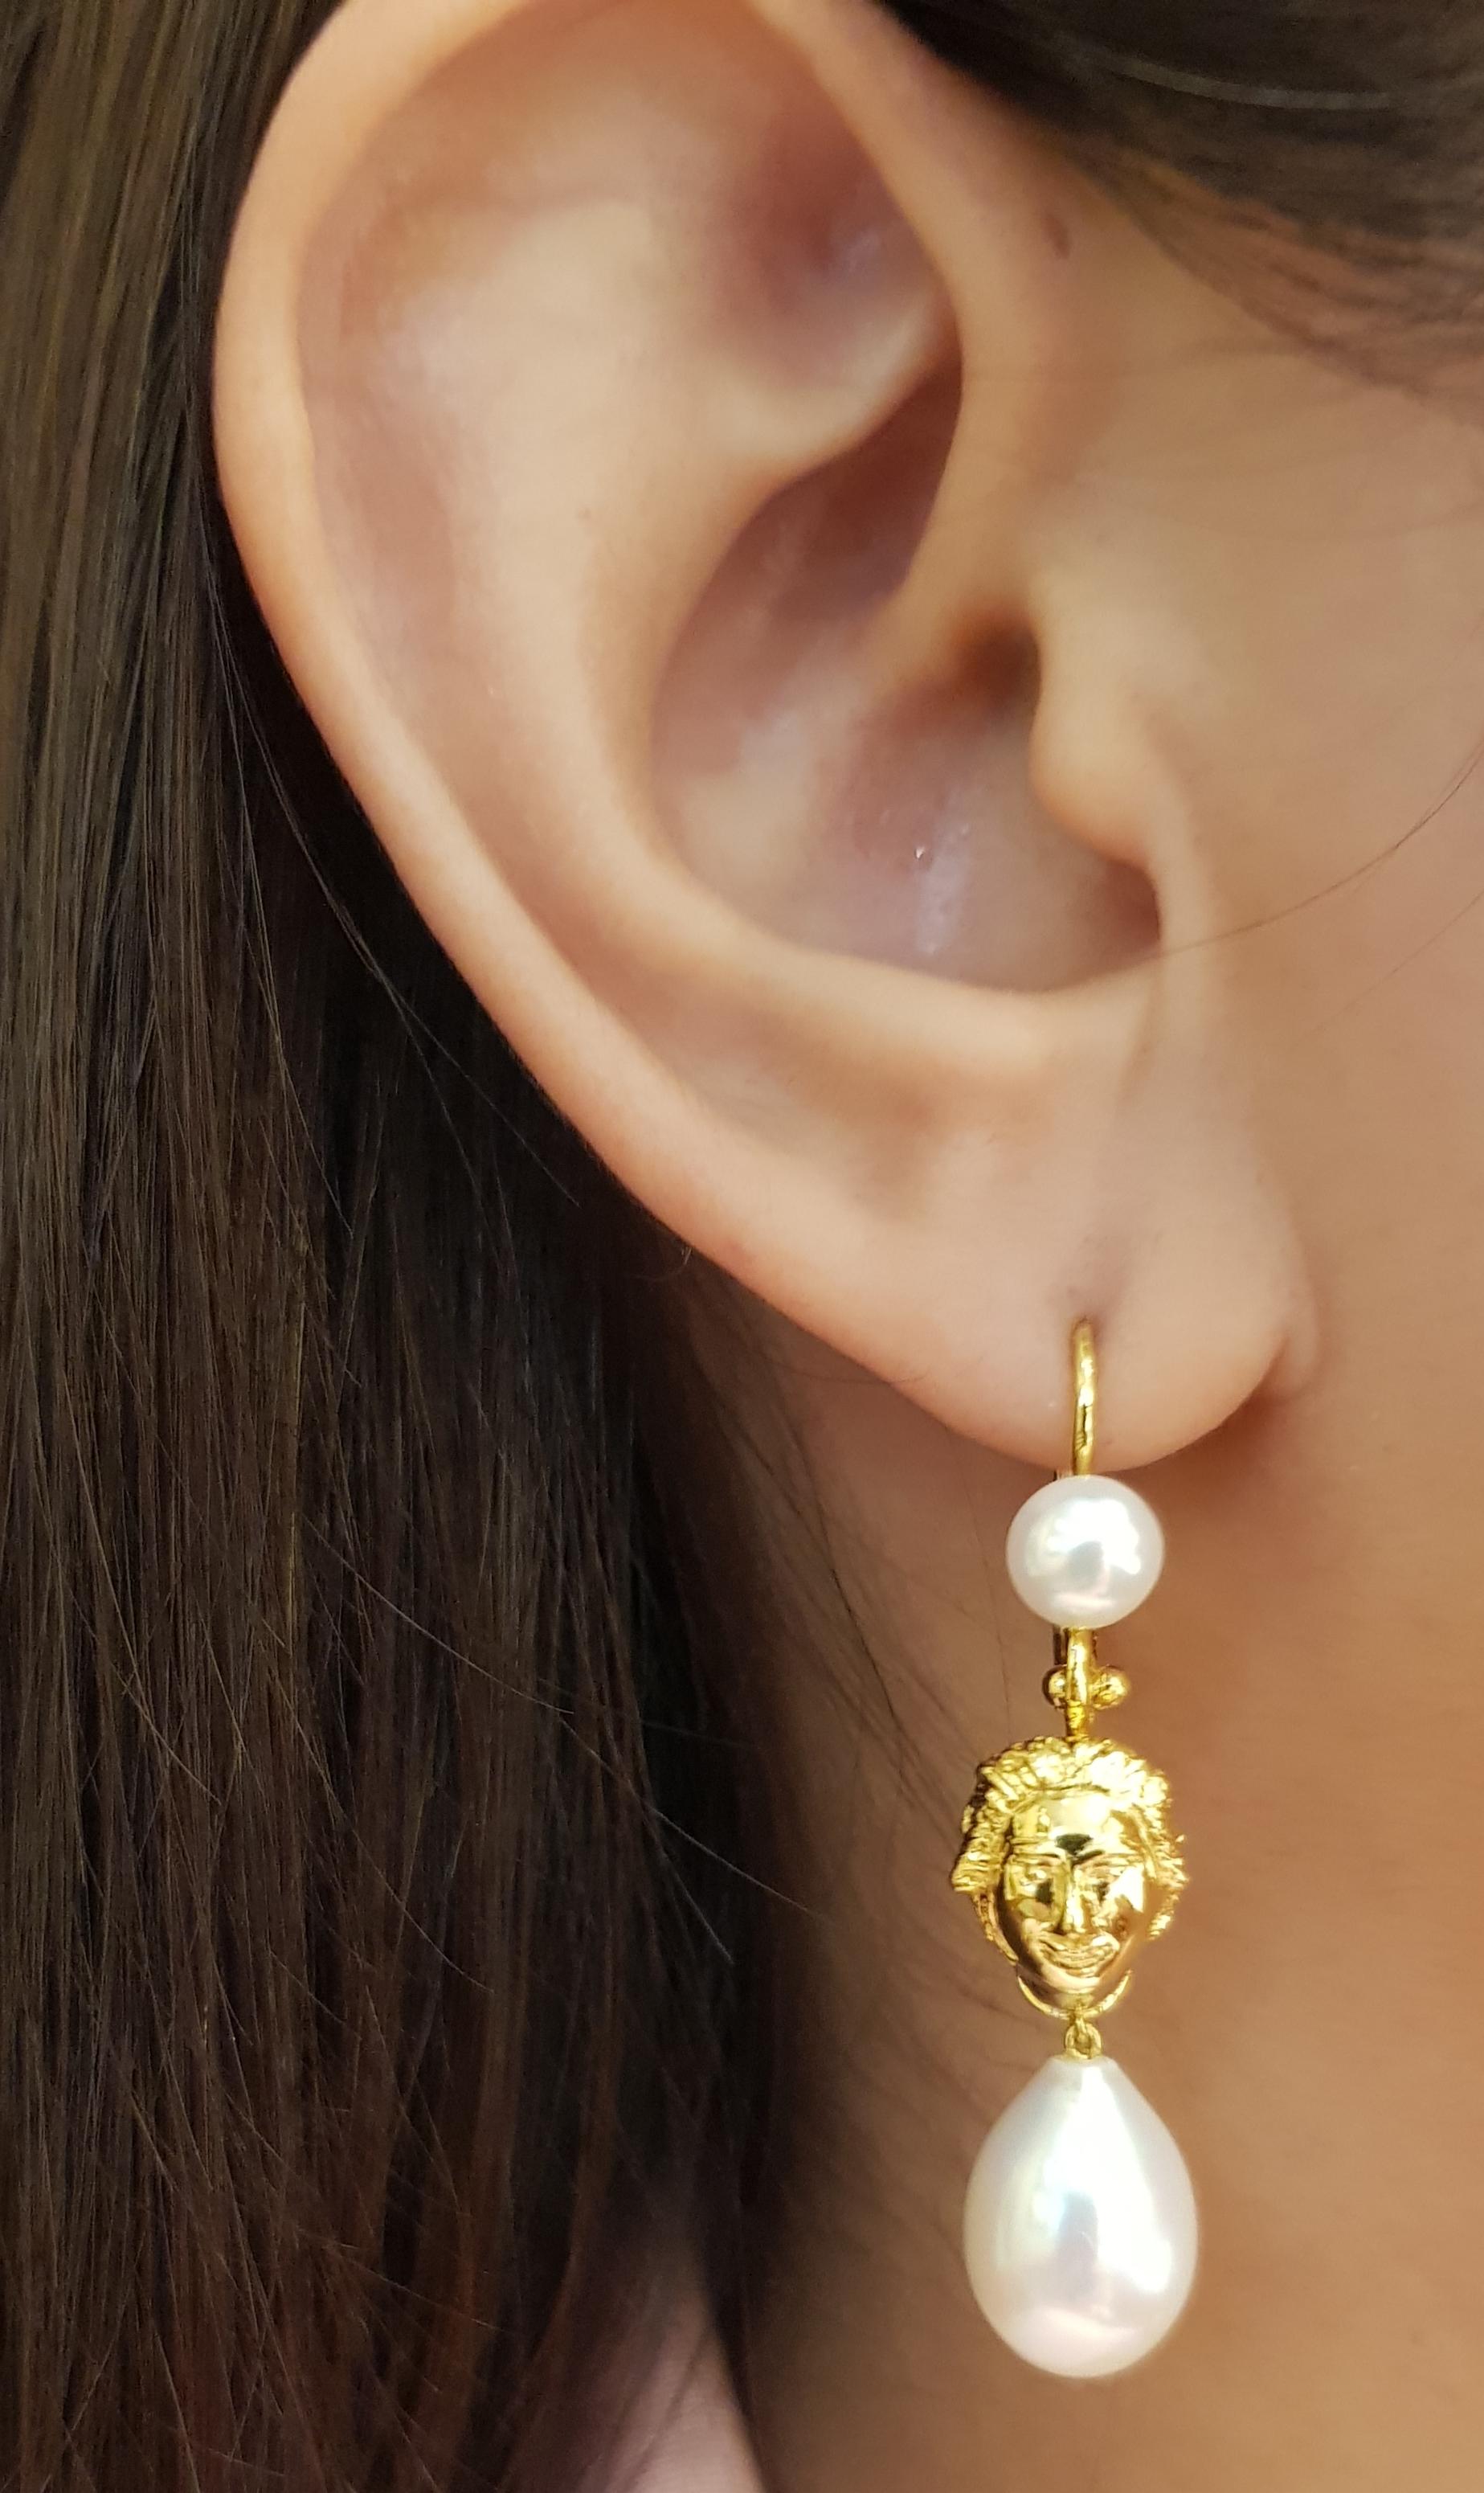 Fresh Water Pearl Earrings set in 18 Karat Gold Settings

Width:  1.0 cm 
Length:  4.5 cm
Total Weight: 4.69 grams

